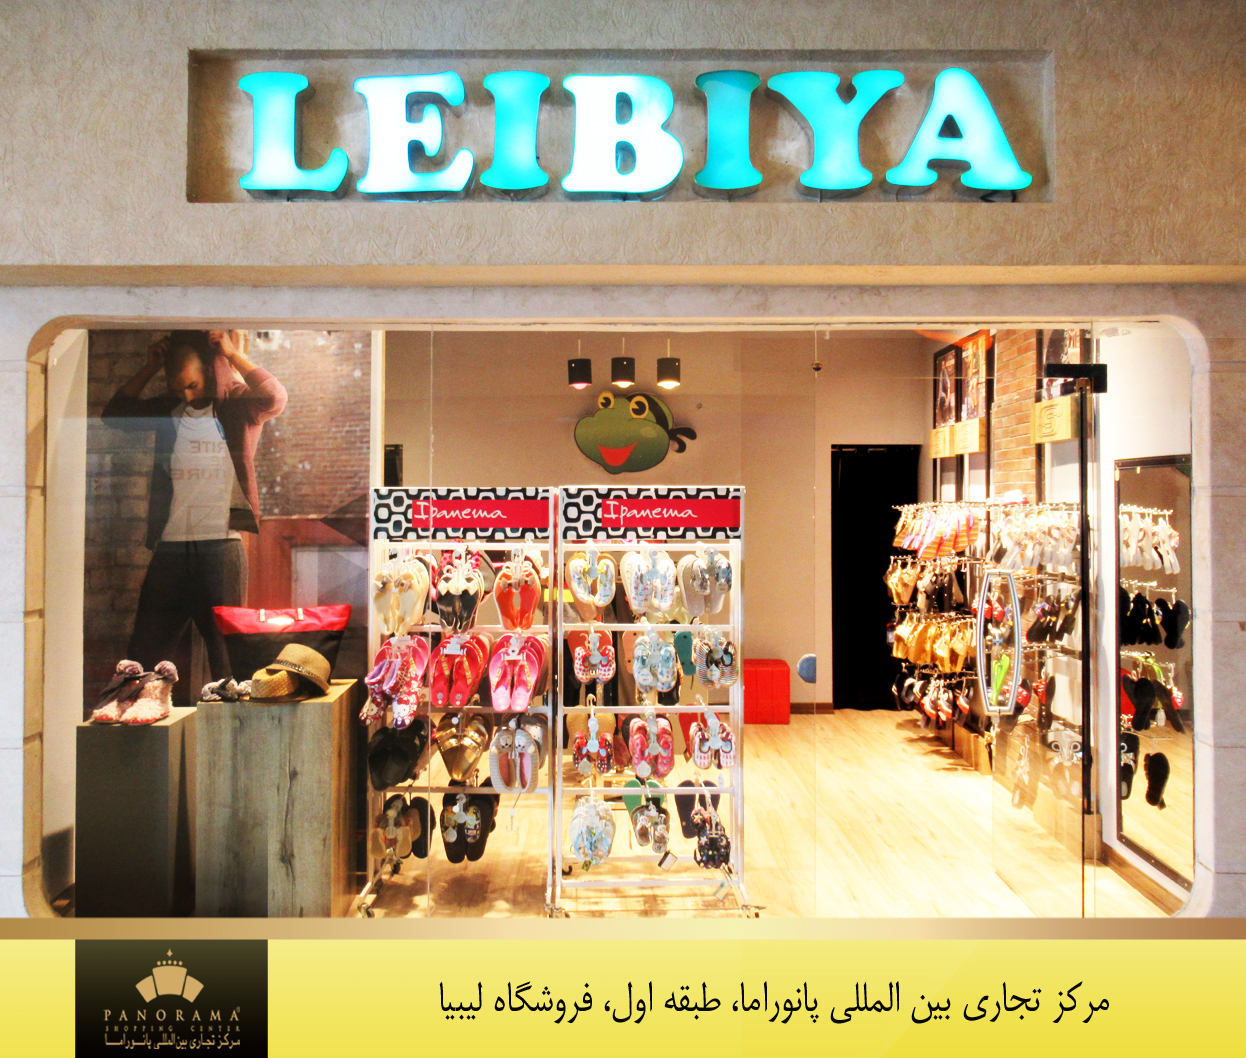 مرکز تجاری بین المللی پانوراما فروشگاه لیبیا